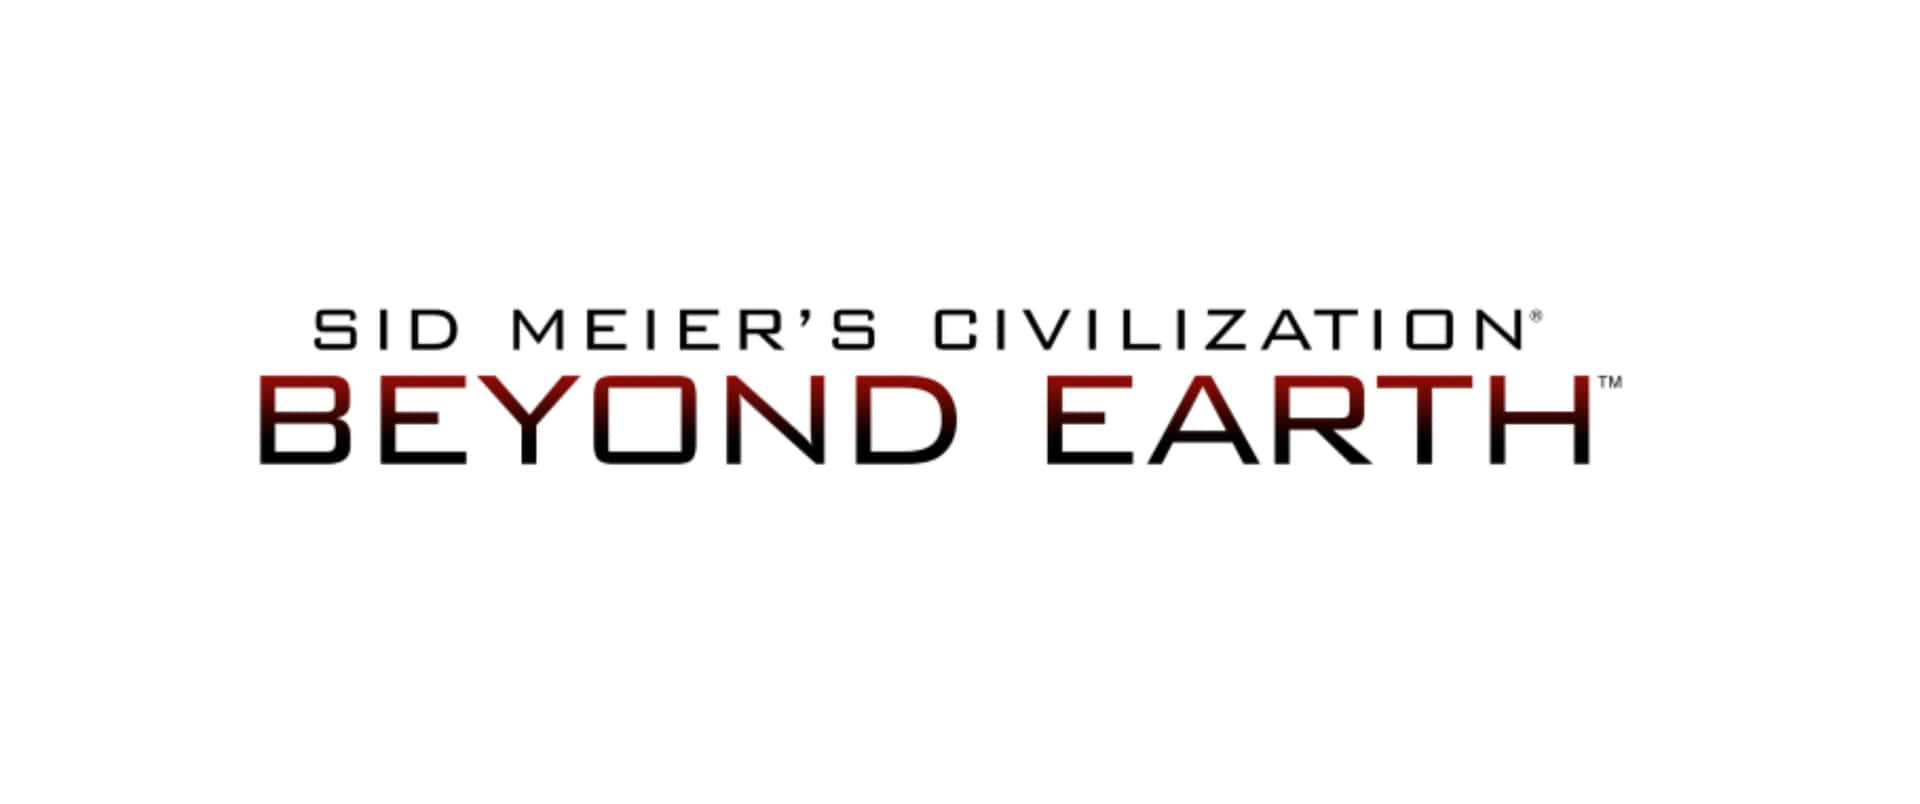 Títuloblanco, Fondo De Civilization Beyond Earth En Resolución 3440x1440p.